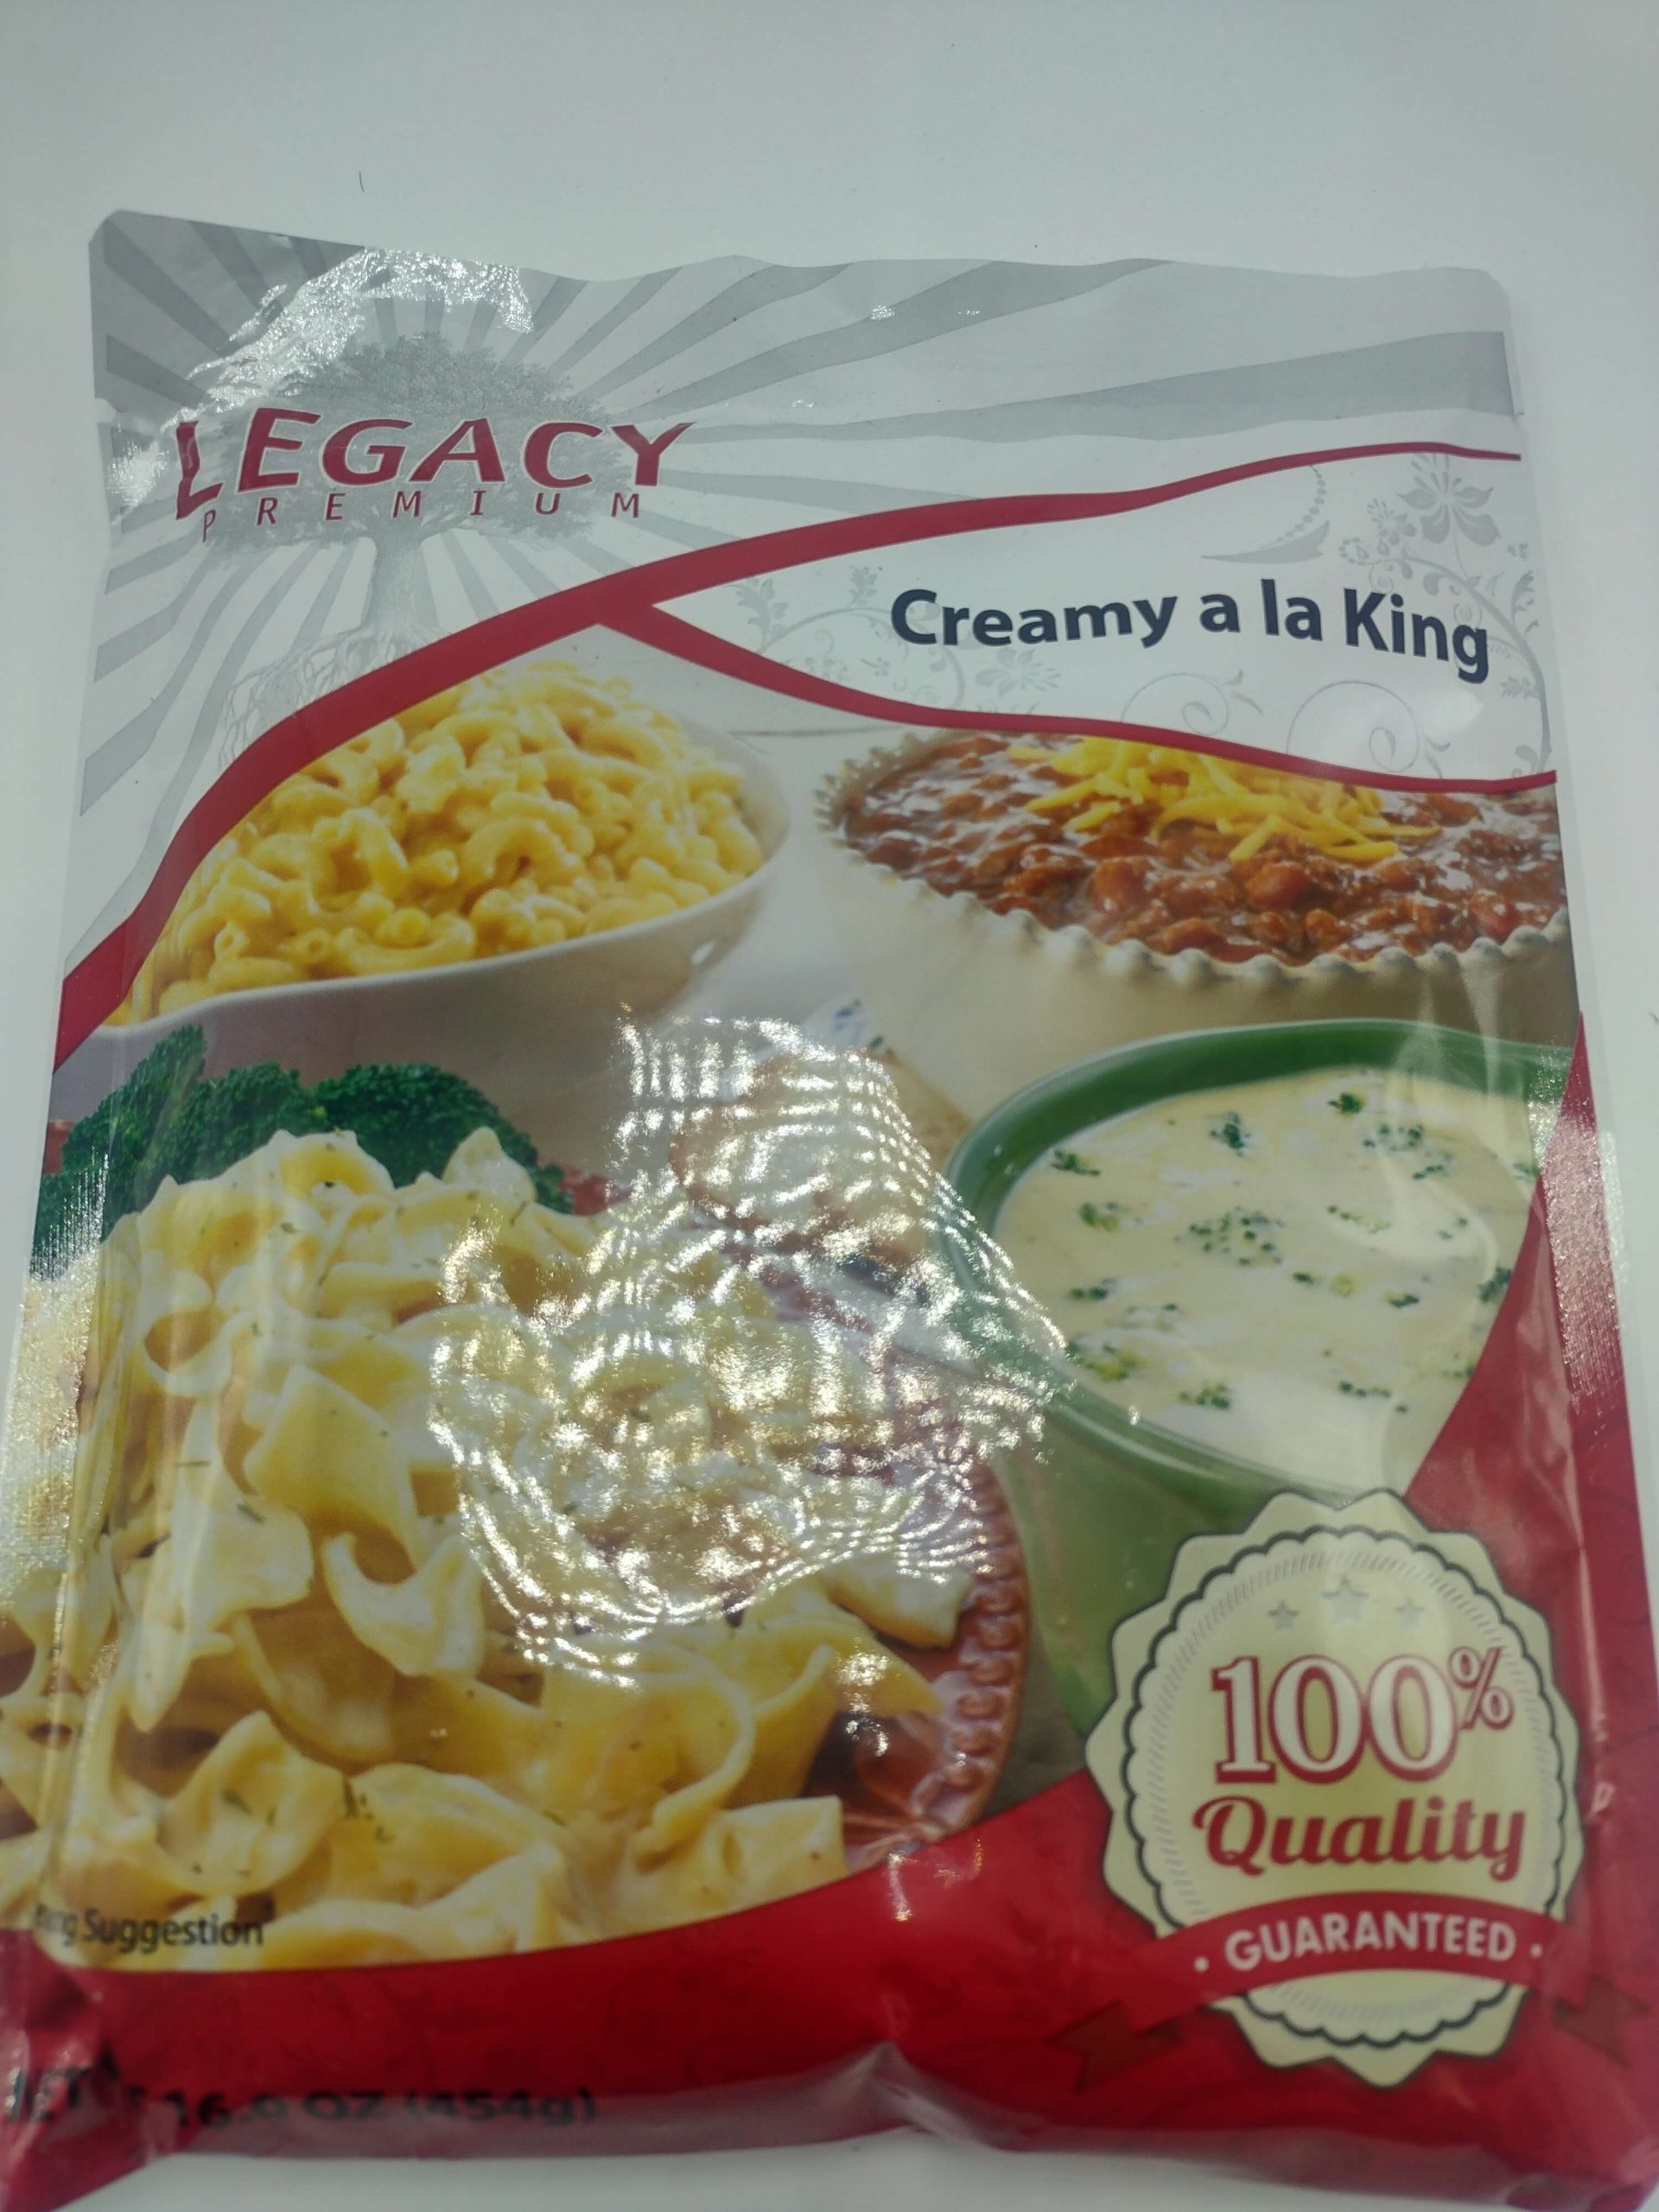 Legacy Premium - Creamy a la King - 4 Servings